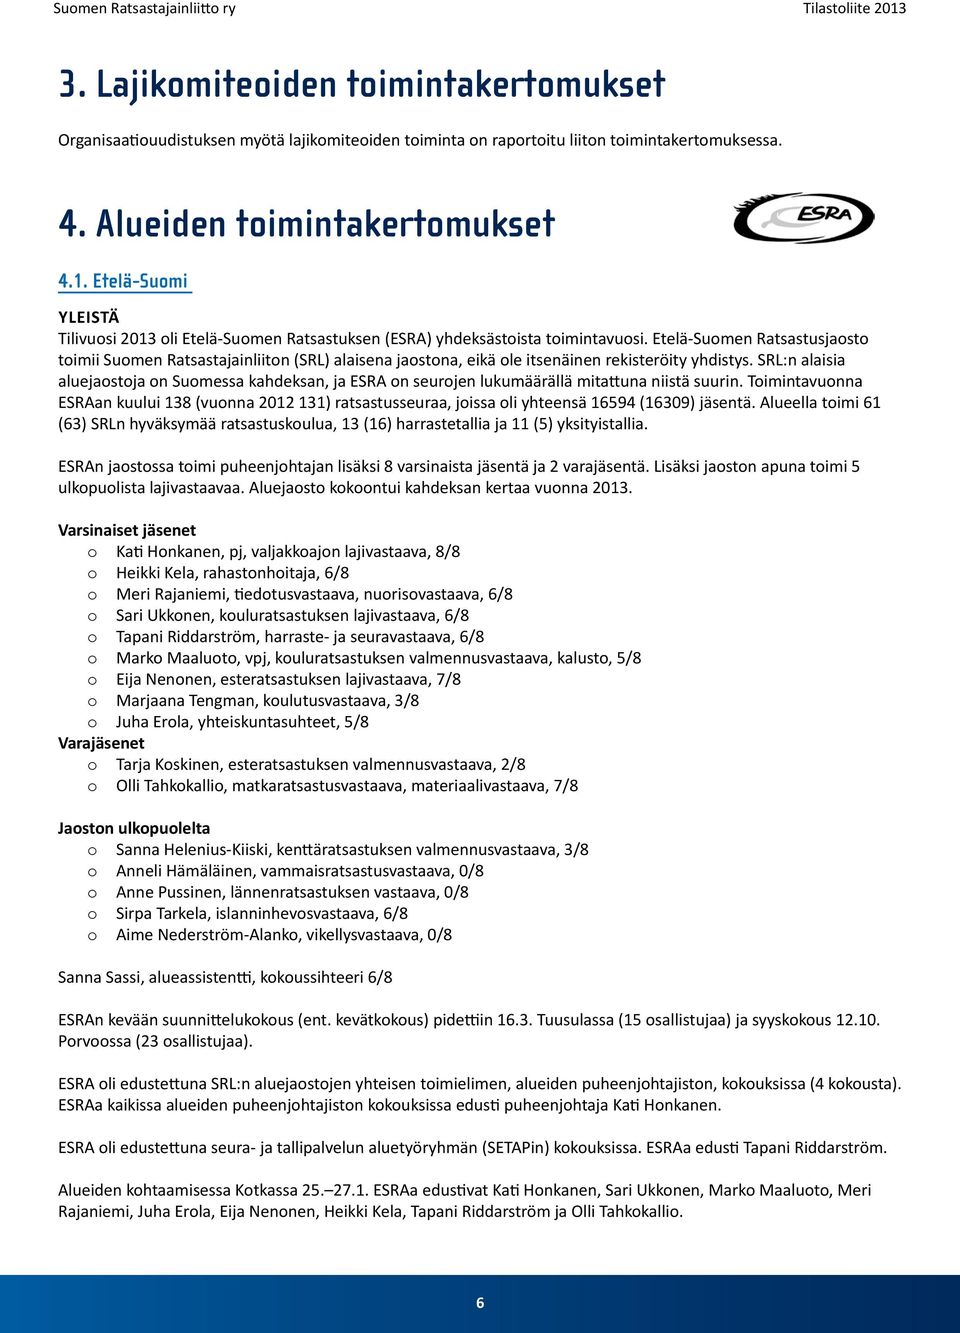 Etelä-Suomen Ratsastusjaosto toimii Suomen Ratsastajainliiton (SRL) alaisena jaostona, eikä ole itsenäinen rekisteröity yhdistys.